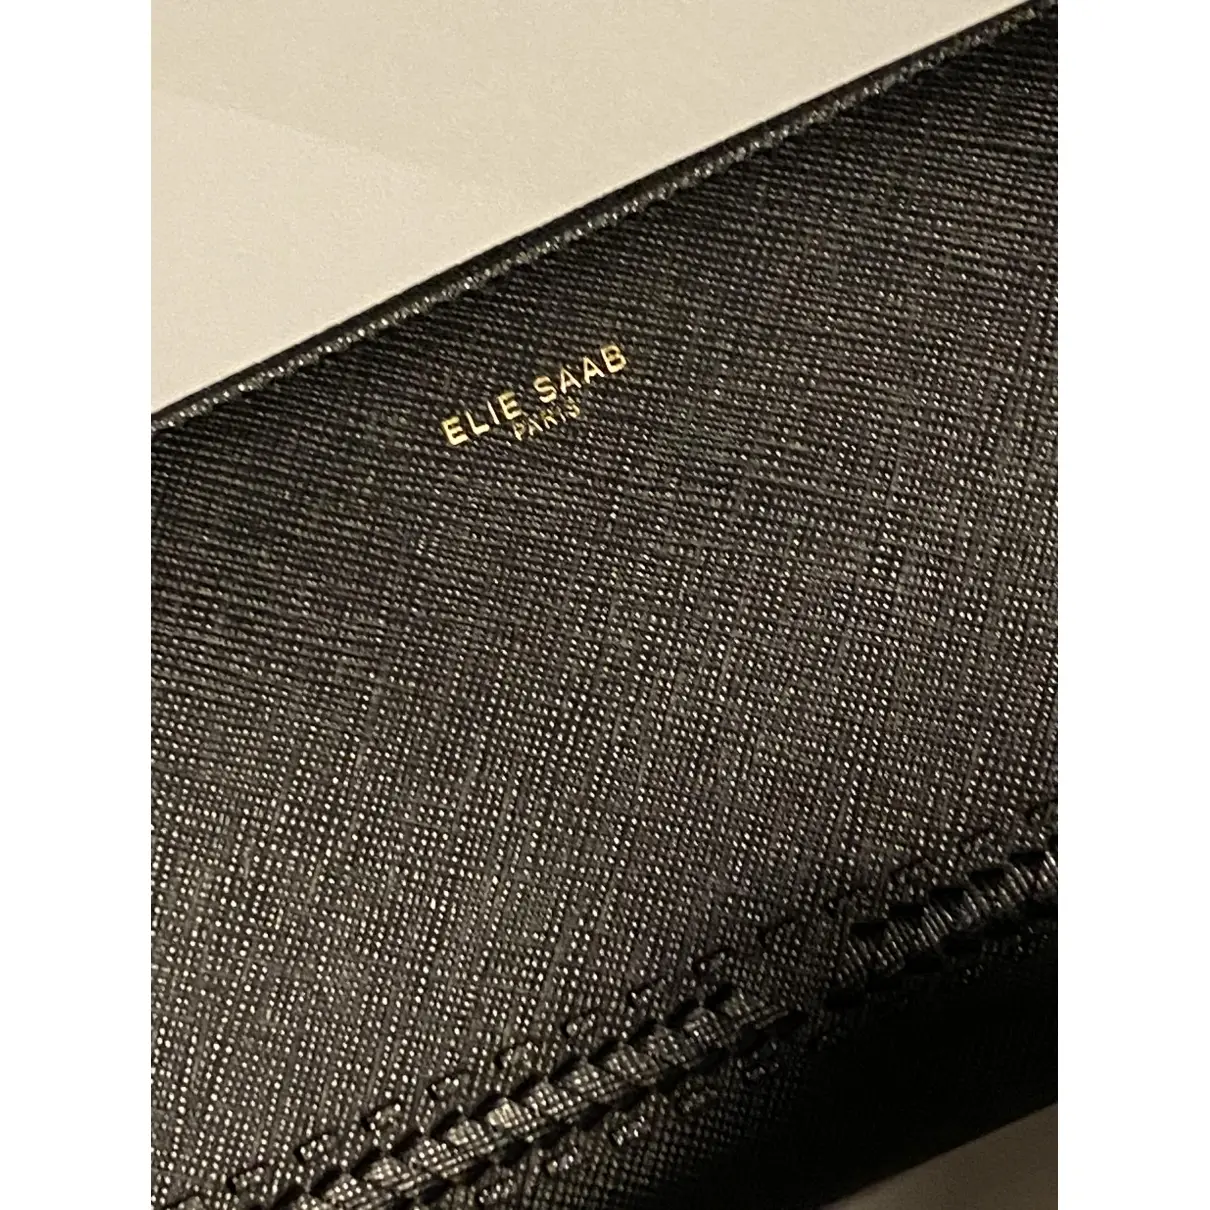 Elie Saab Leather wallet for sale